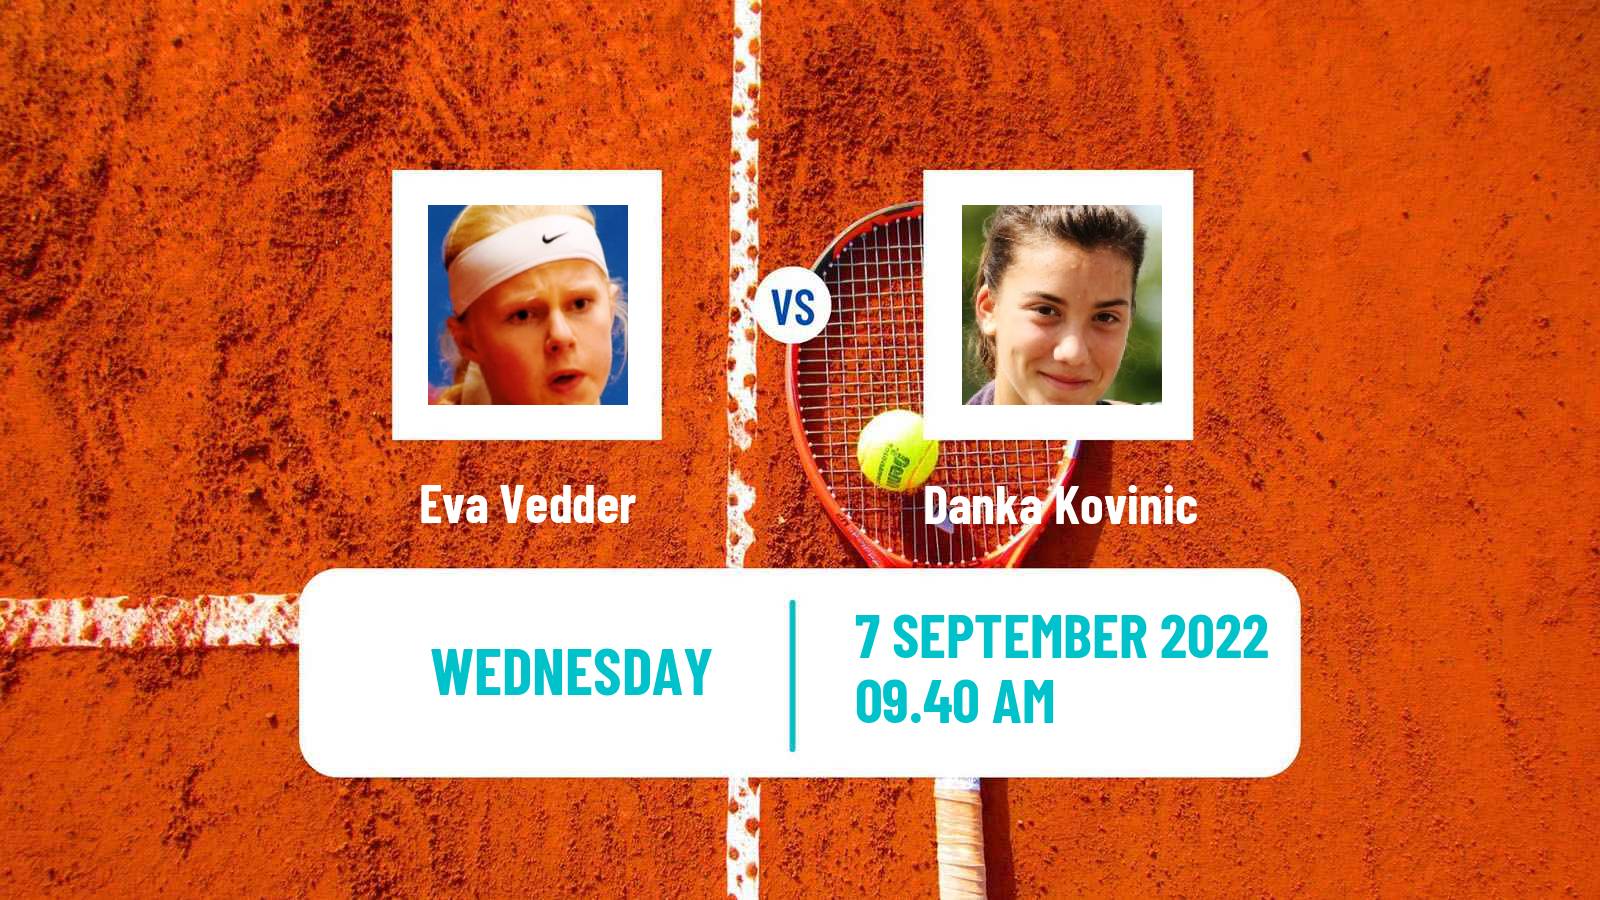 Tennis ATP Challenger Eva Vedder - Danka Kovinic